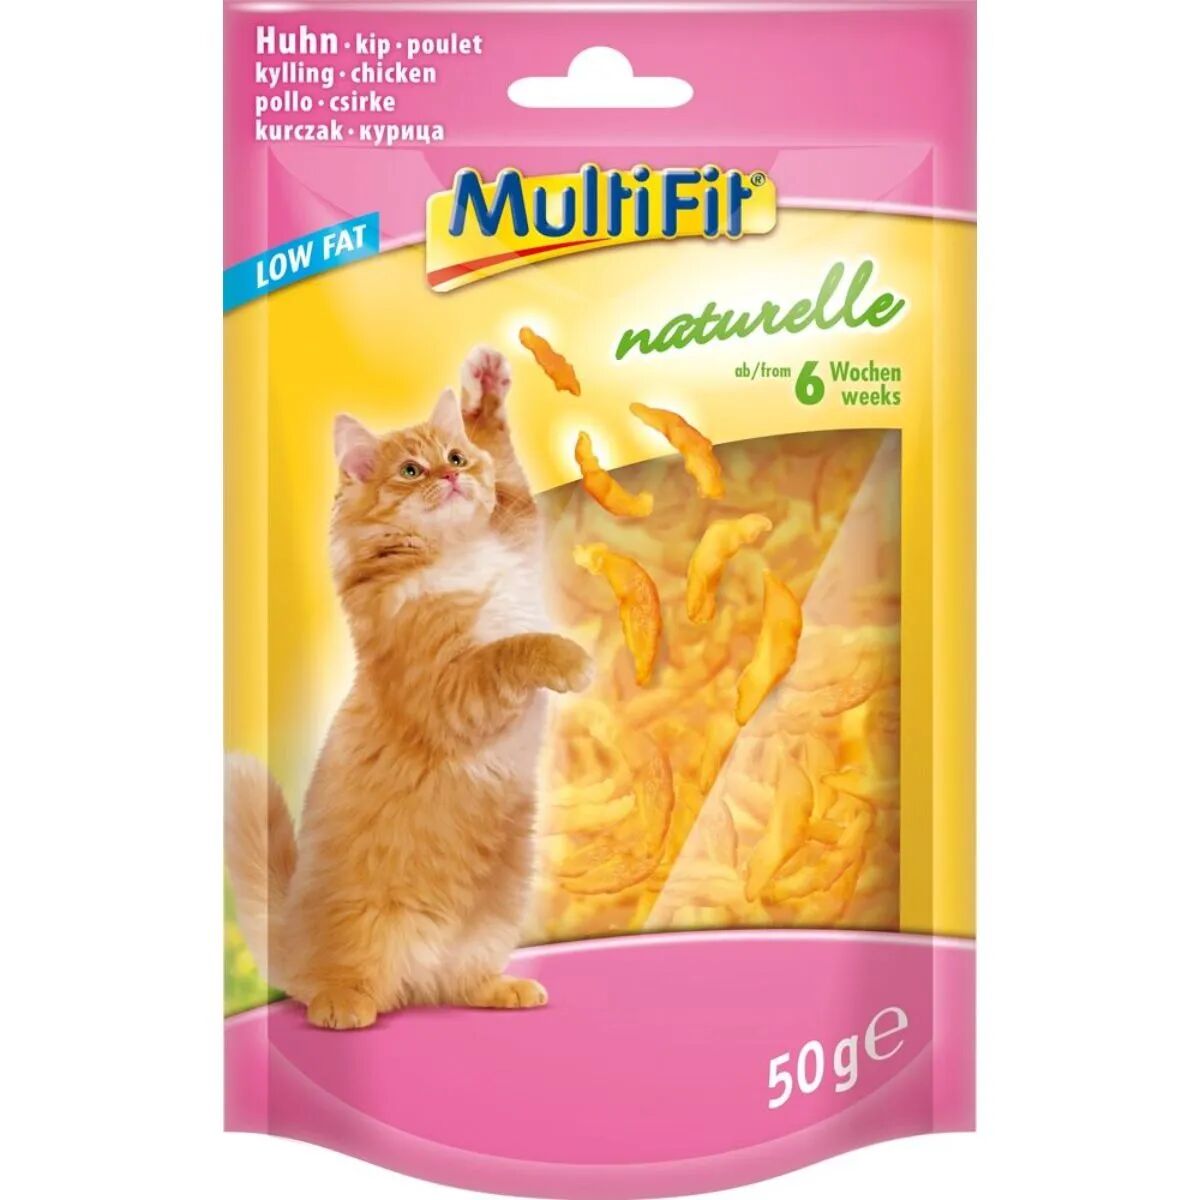 MULTIFIT Naturelle Snack Kitten Pollo 50G